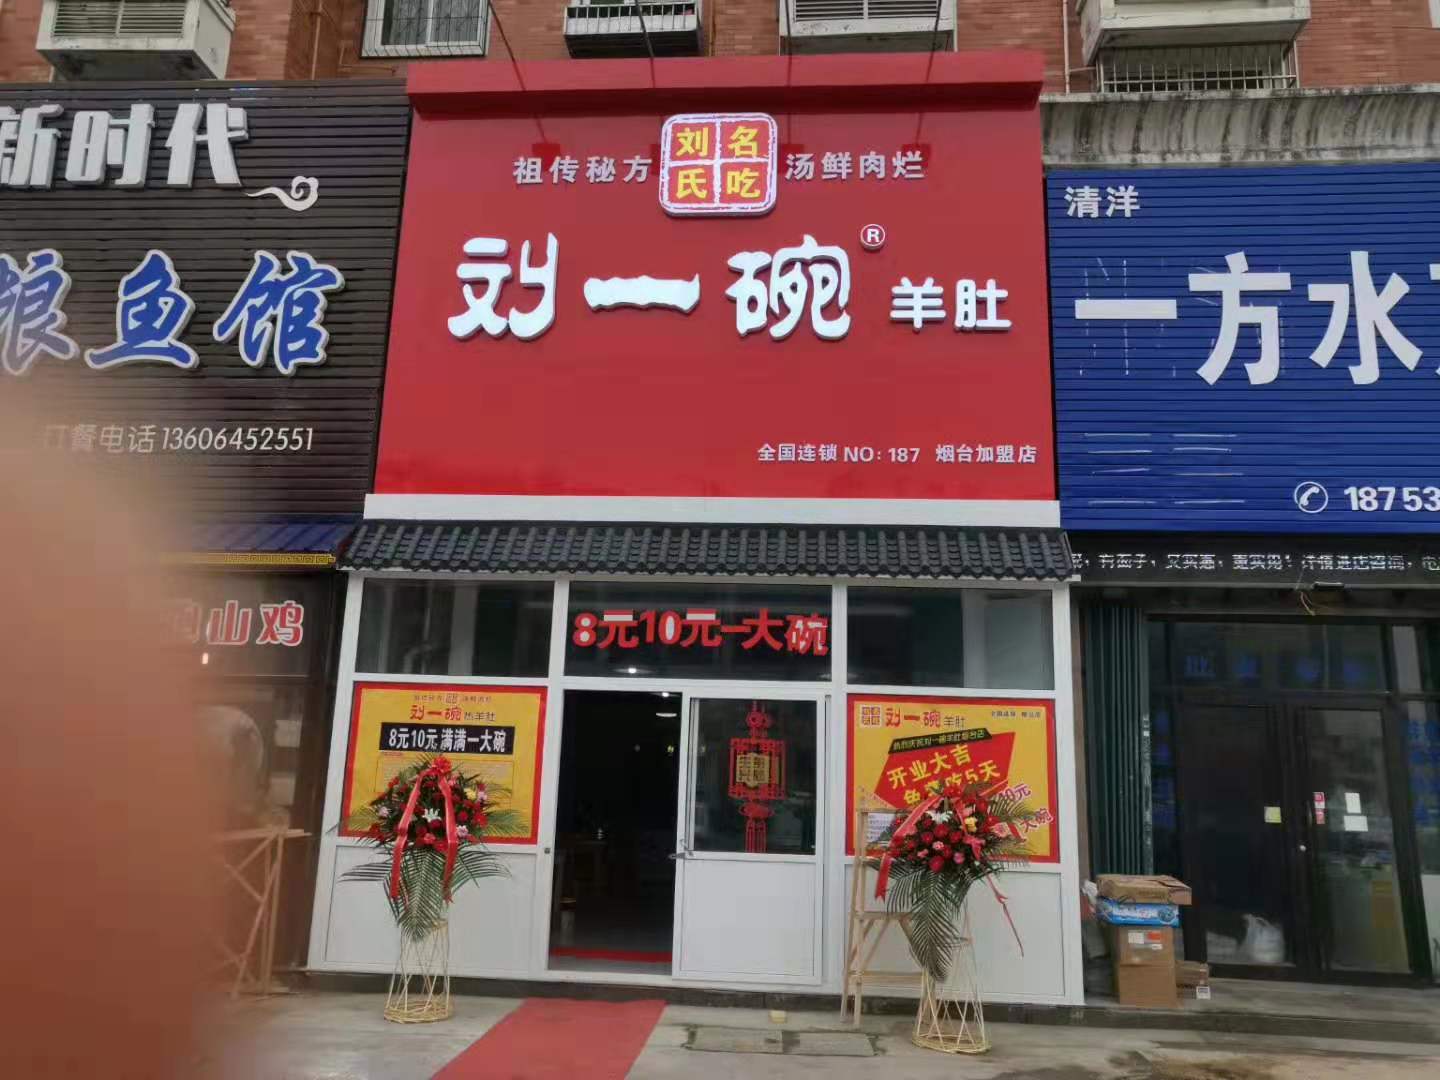 刘一碗烟台福山区店于2019年12月25日盛大开业，祝开业大吉！